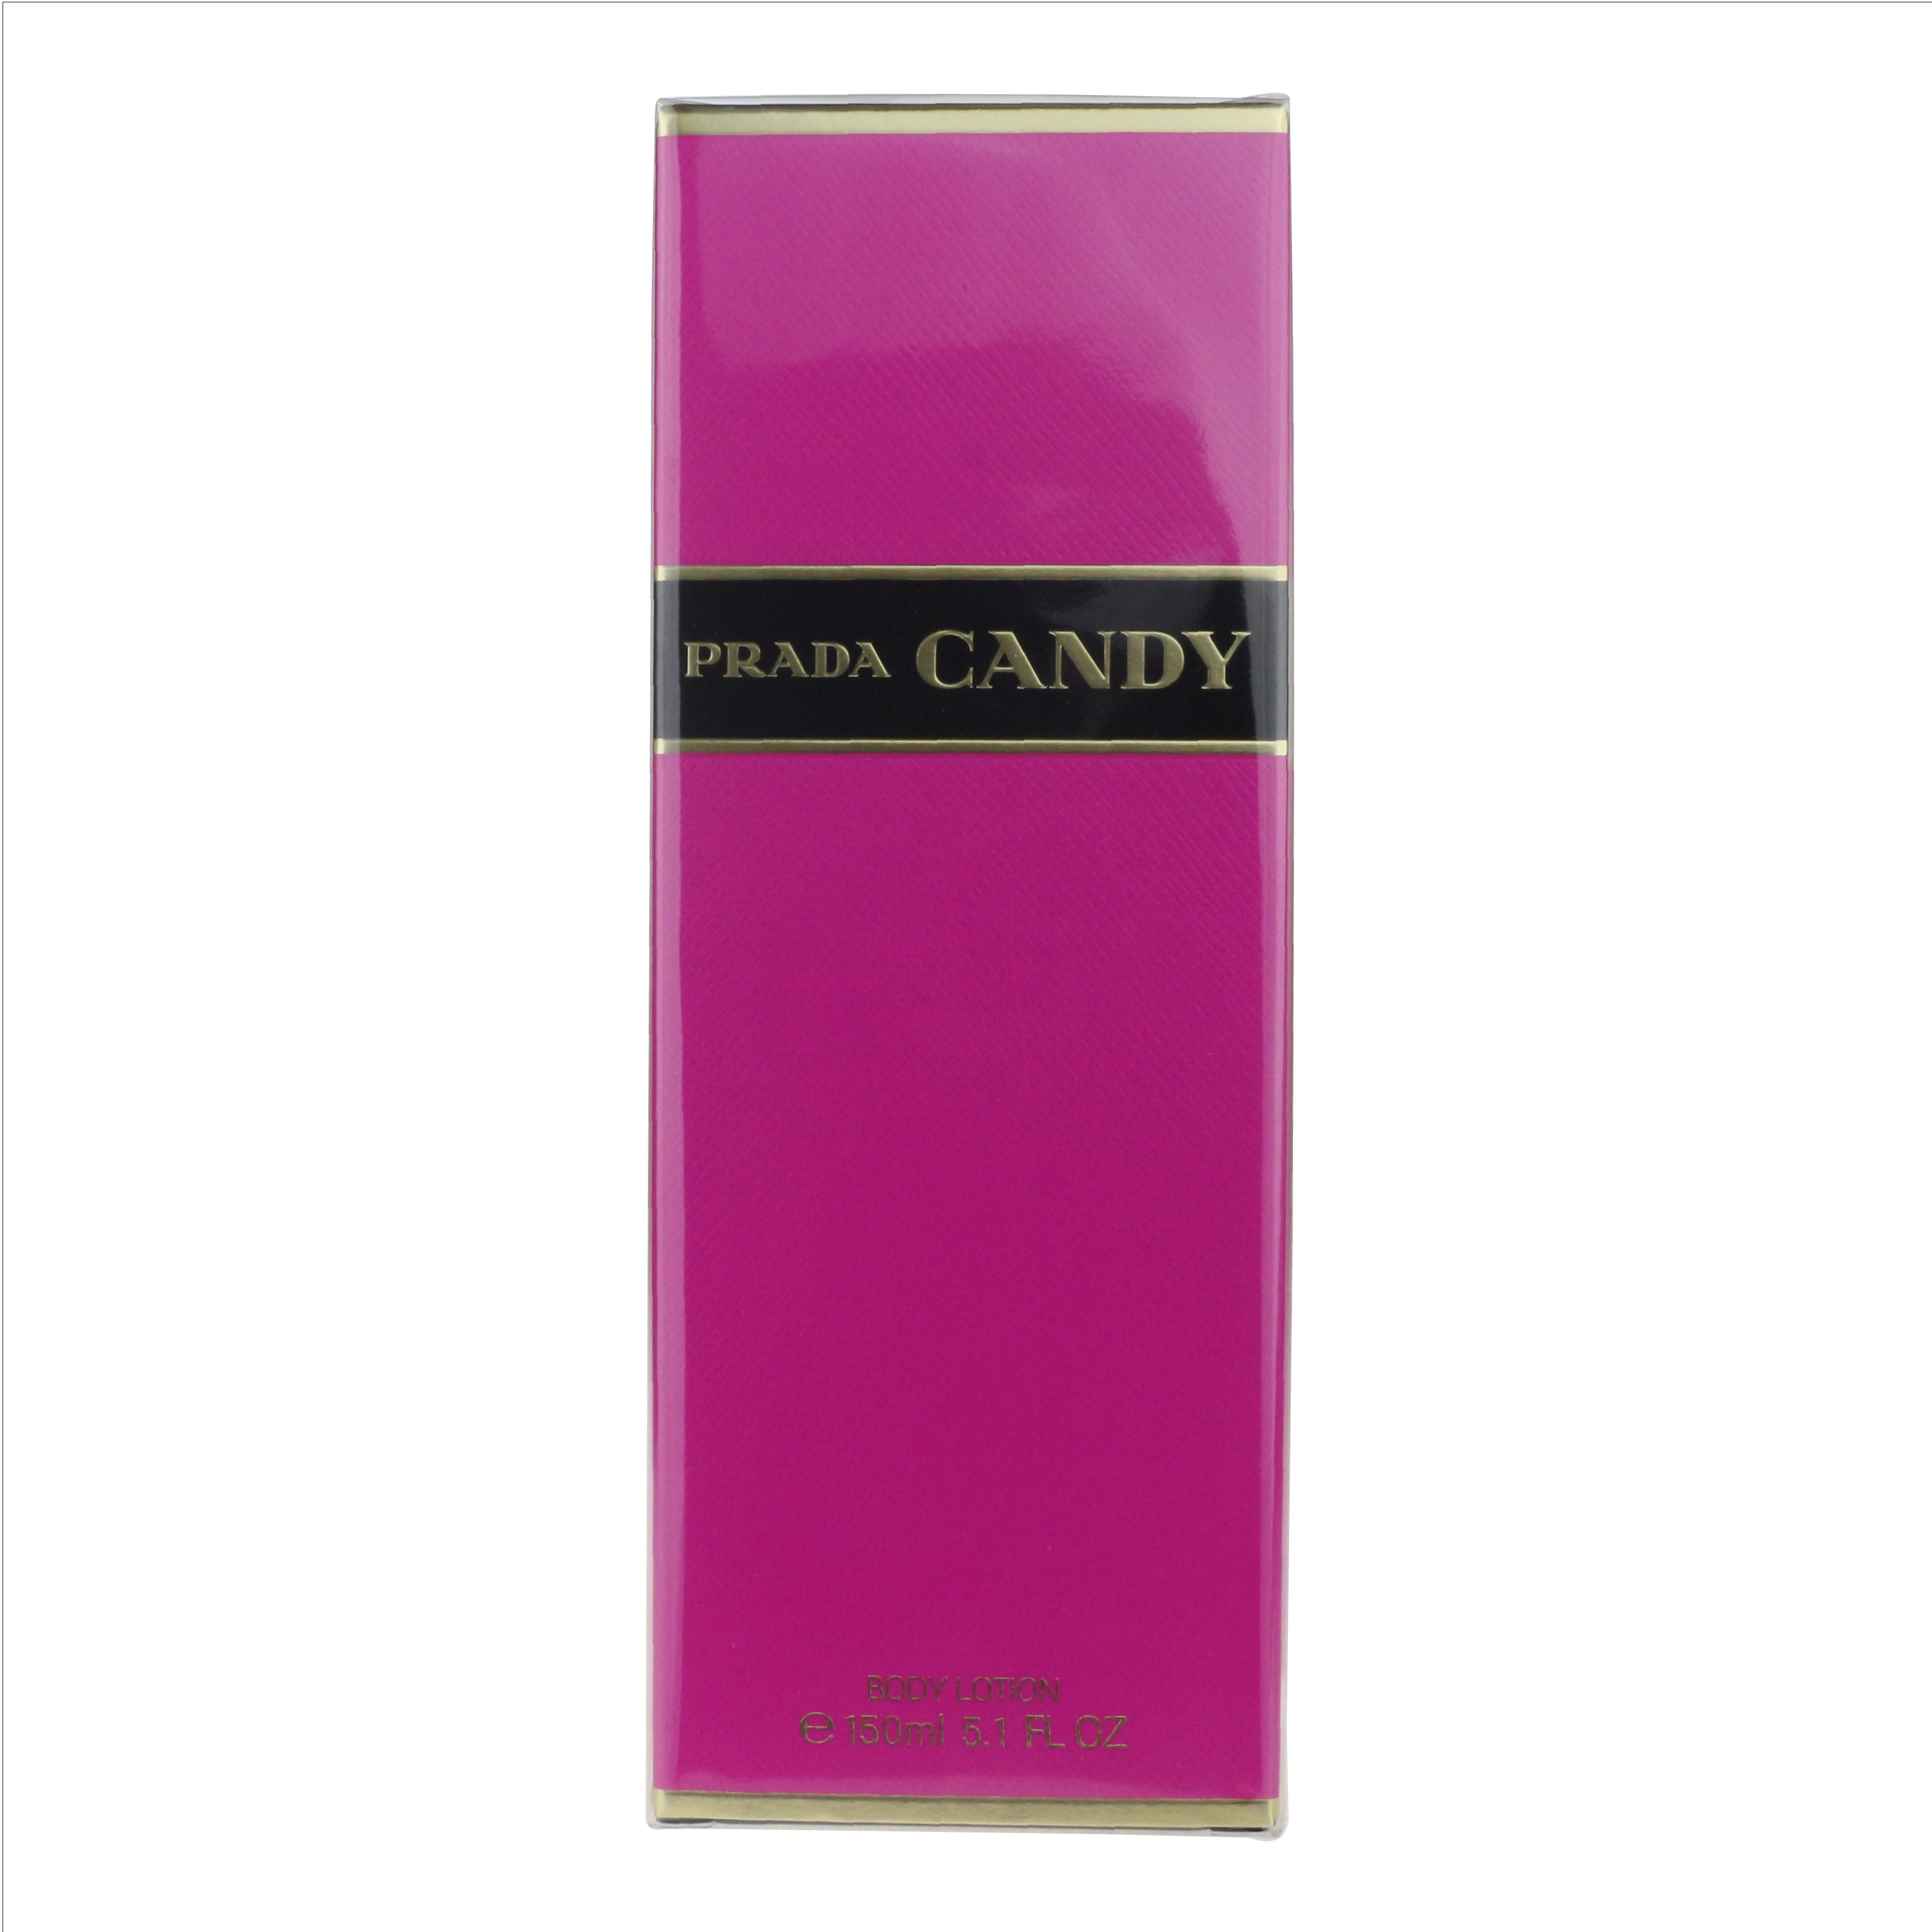 Prada Candy Body Lotion 5.1oz/150ml New 